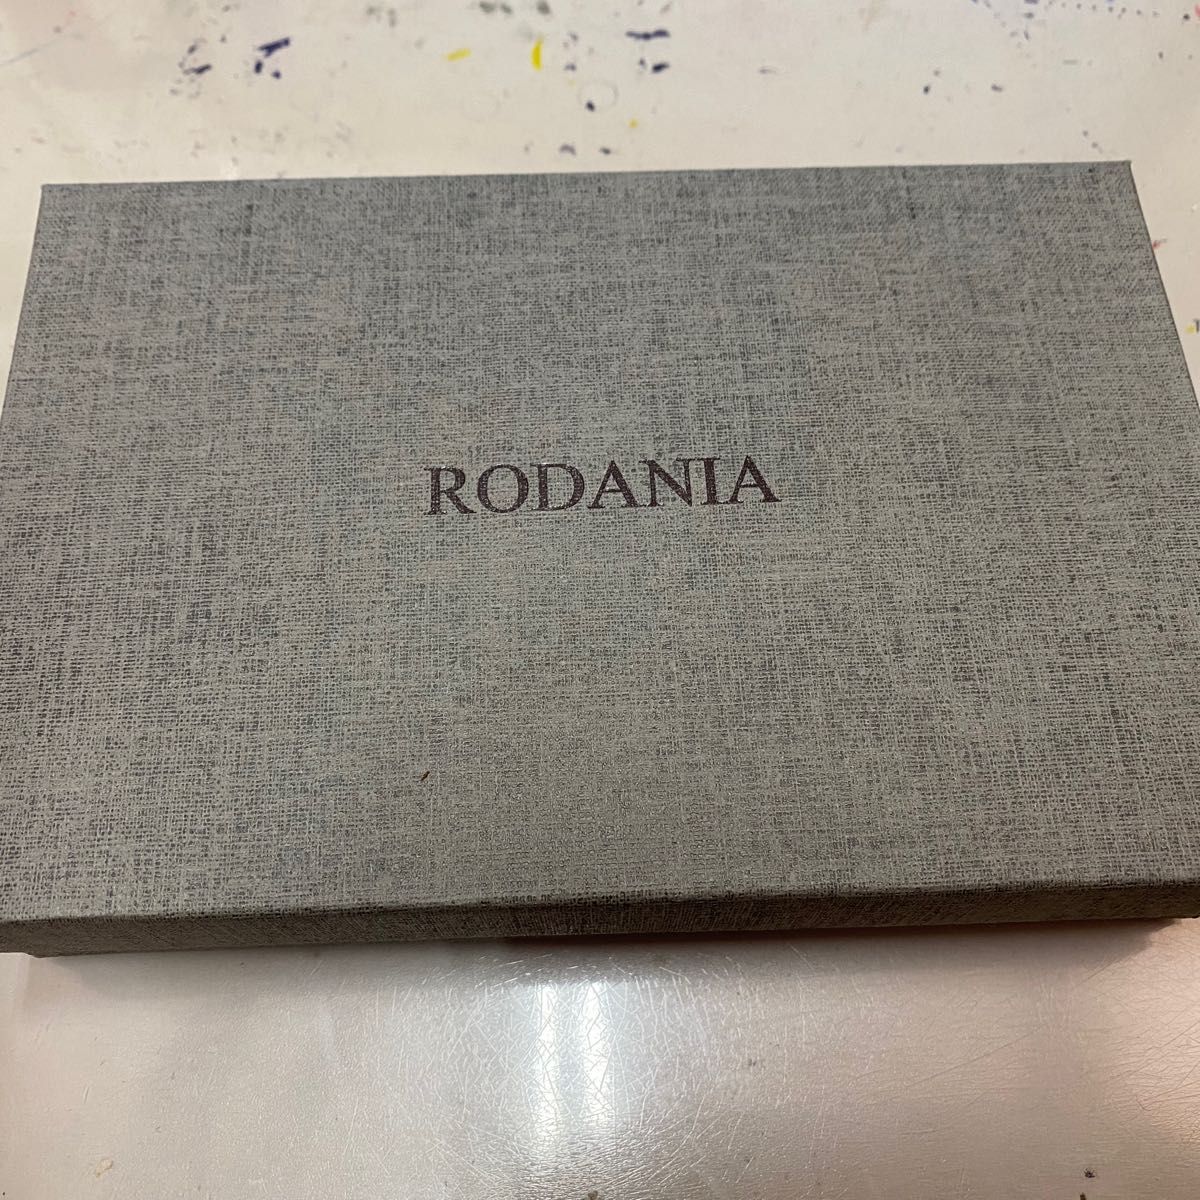 未使用 RODANIA ラウンドファスナー財布 レディース 黒 オーストリッチ